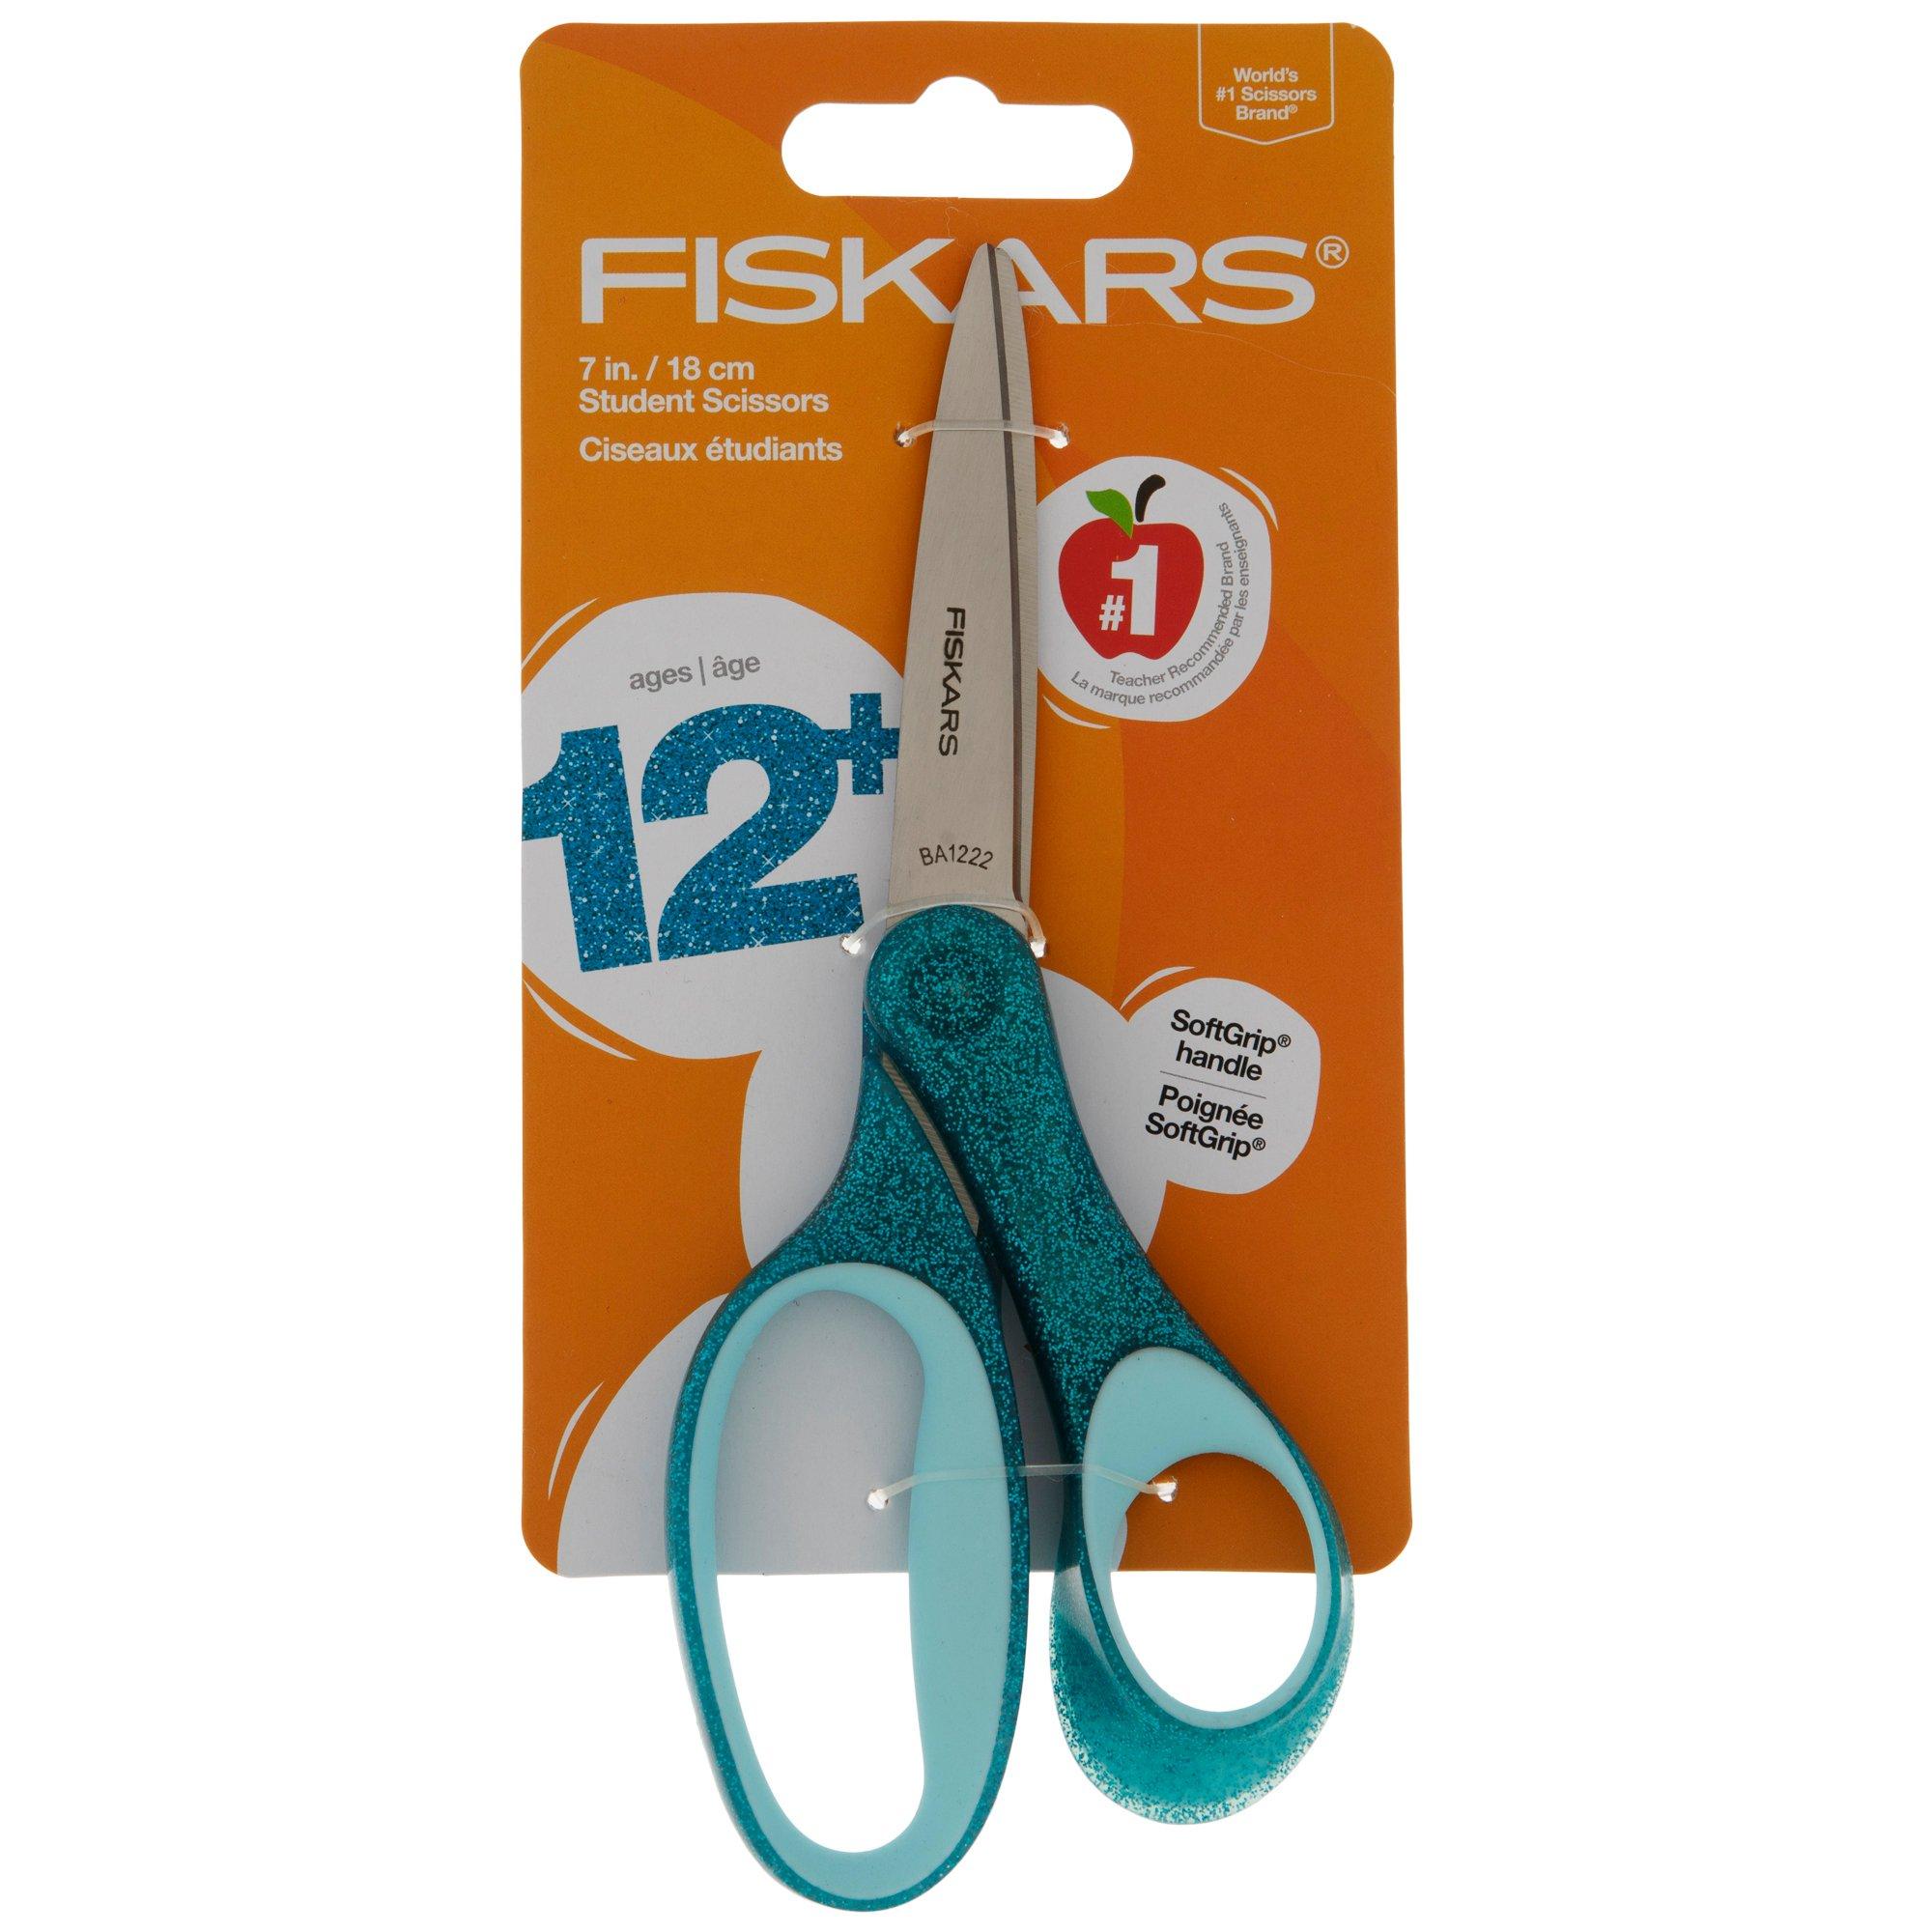 Fiskars 7" Student Glitter Scissors for Kids 12+ - Turquoise